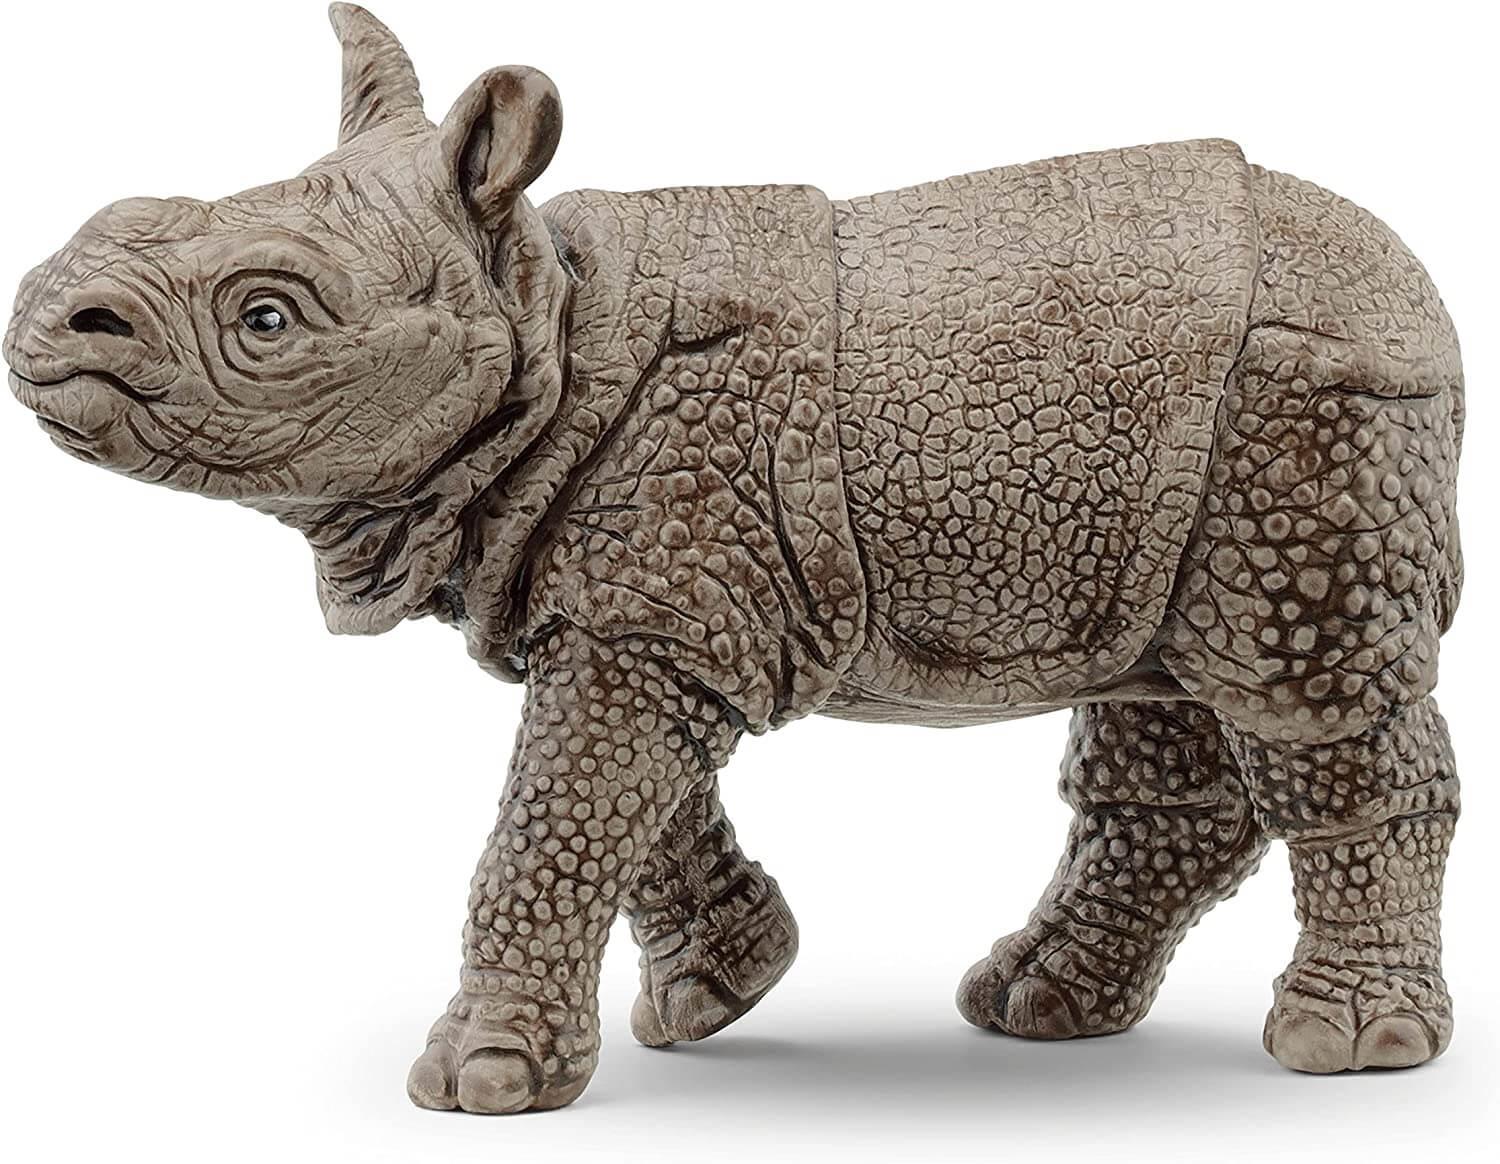 Schleich Wild Life 14860 Indian Rhinoceras Baby